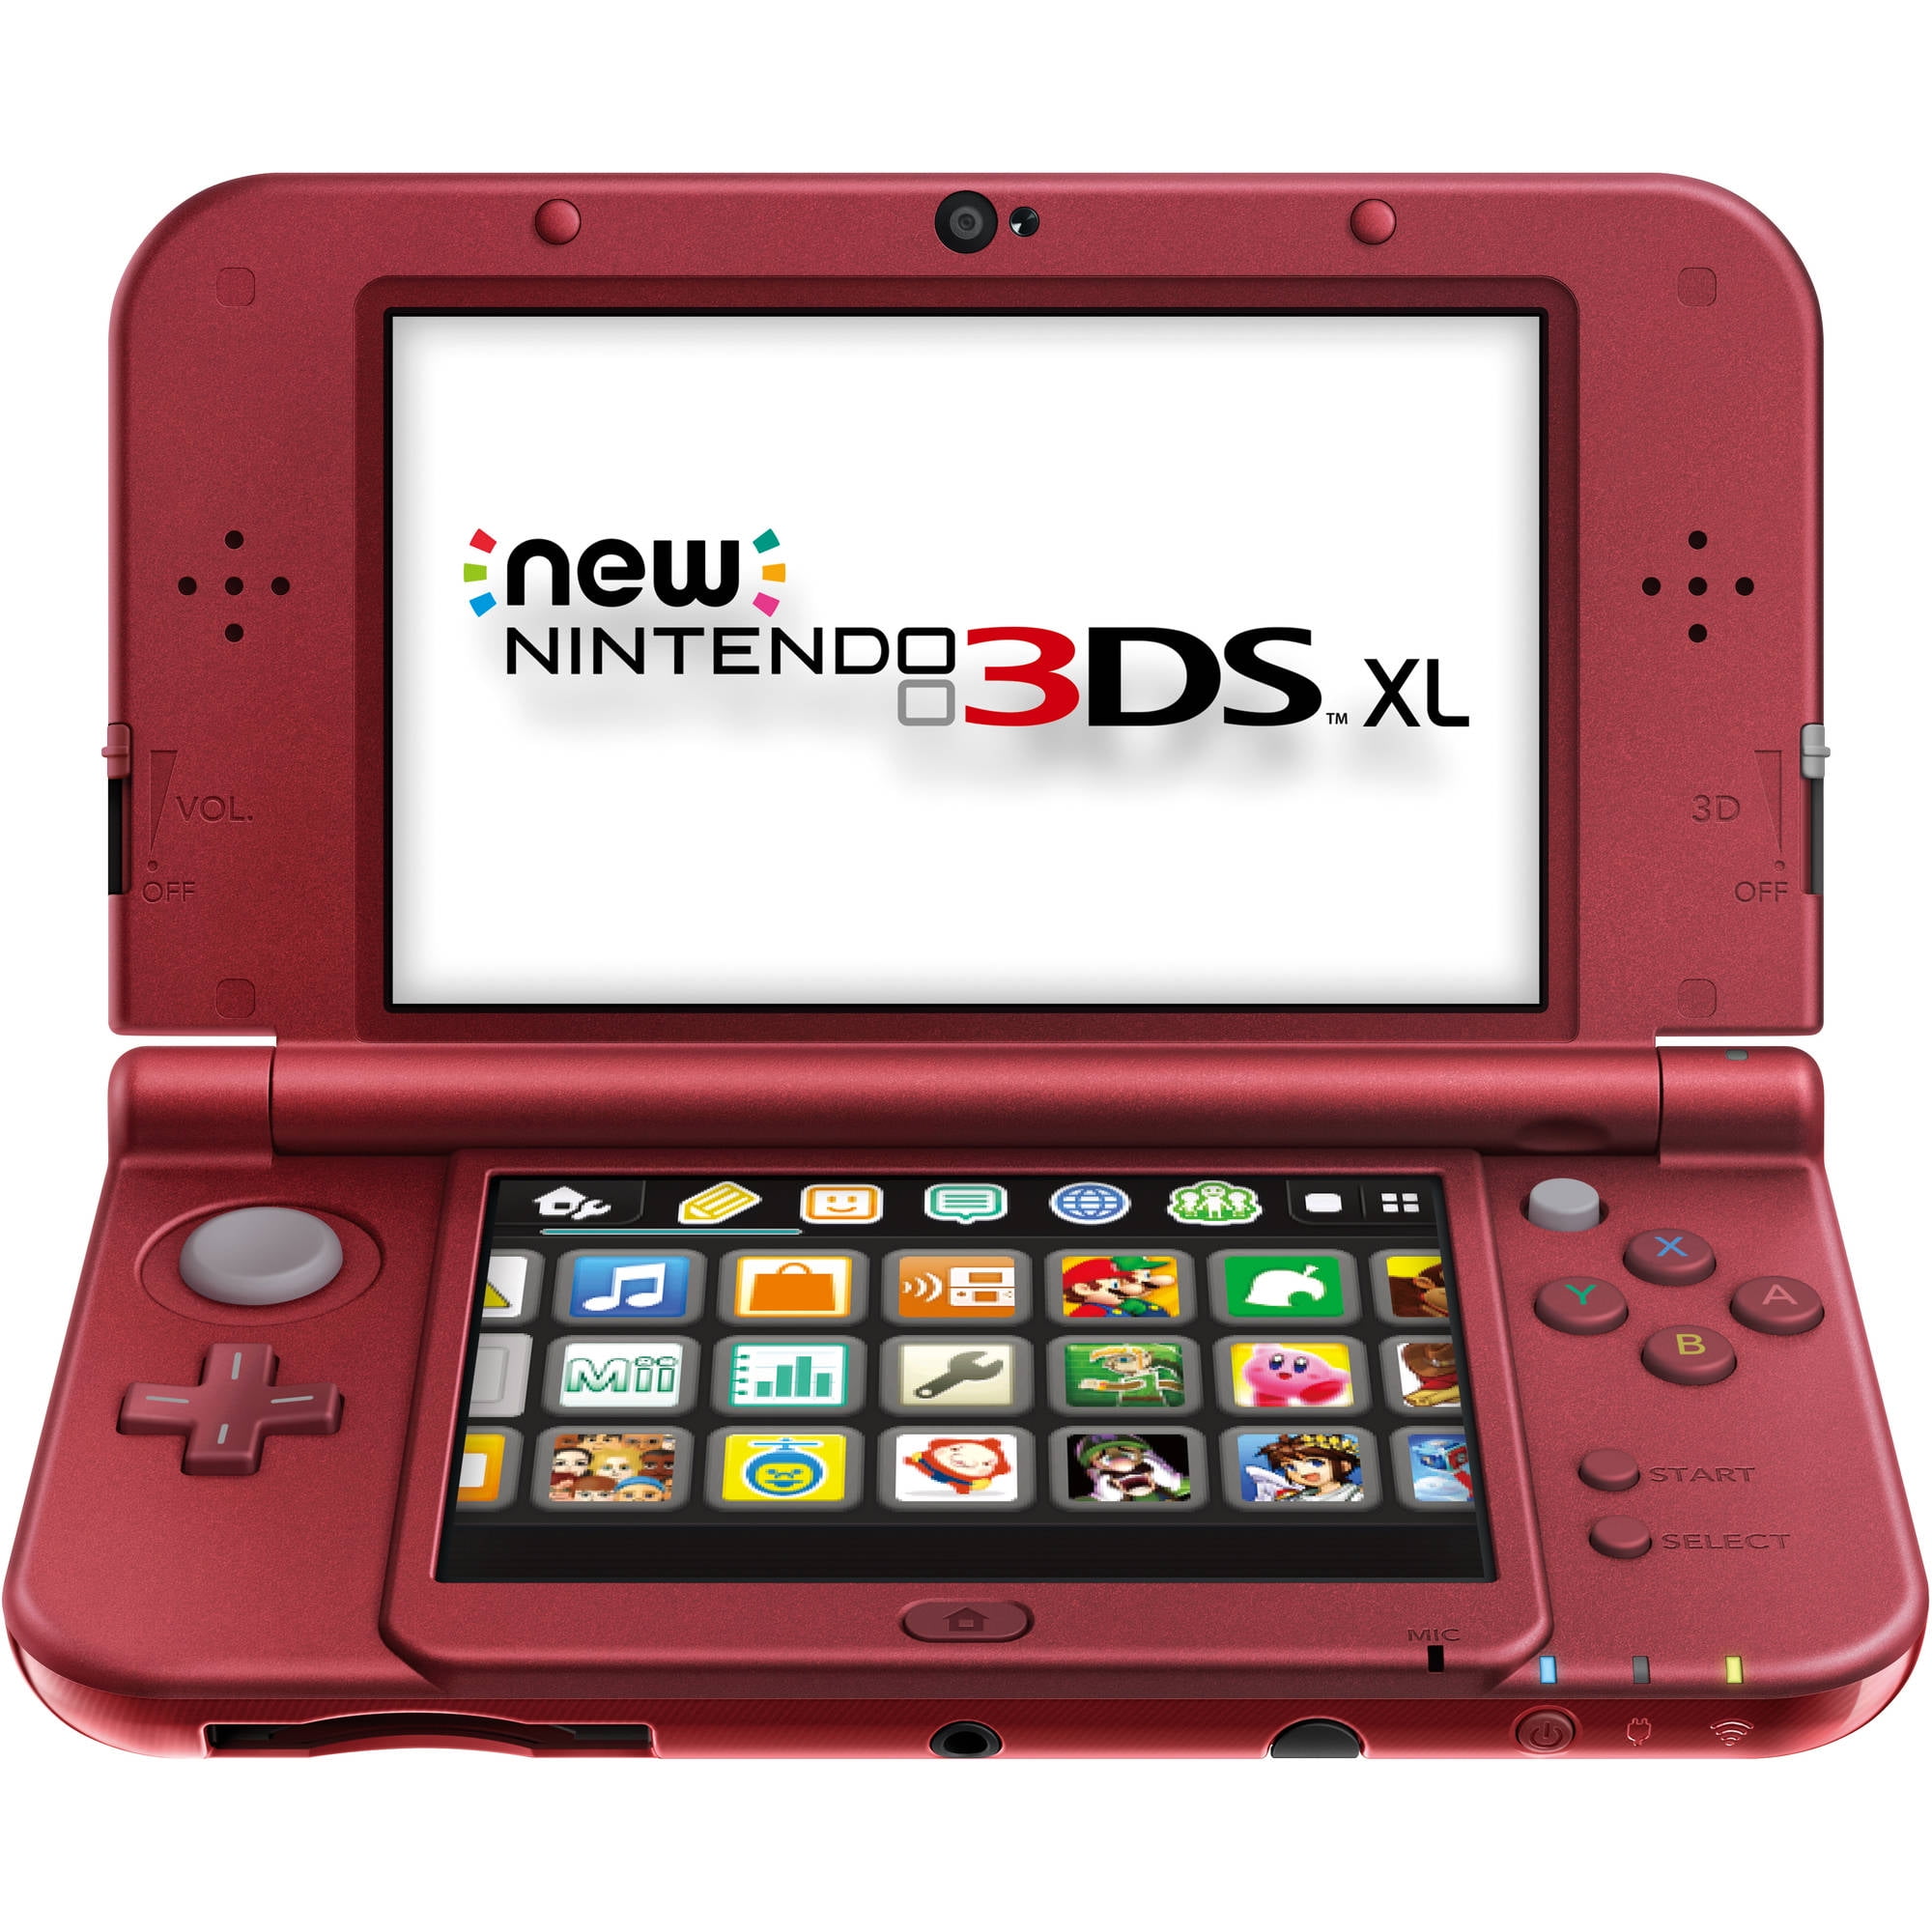 politicus Silicium Zeg opzij Nintendo 3DS XL Handheld, Red - Walmart.com